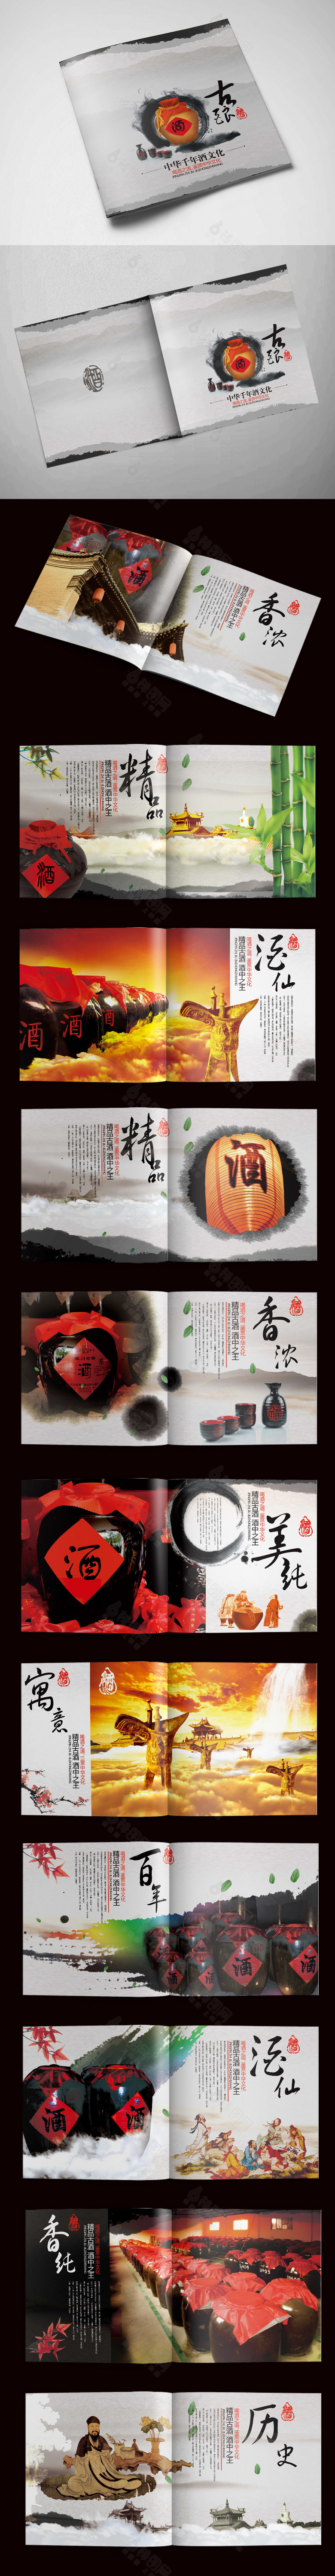 水墨中国风酒文化画册